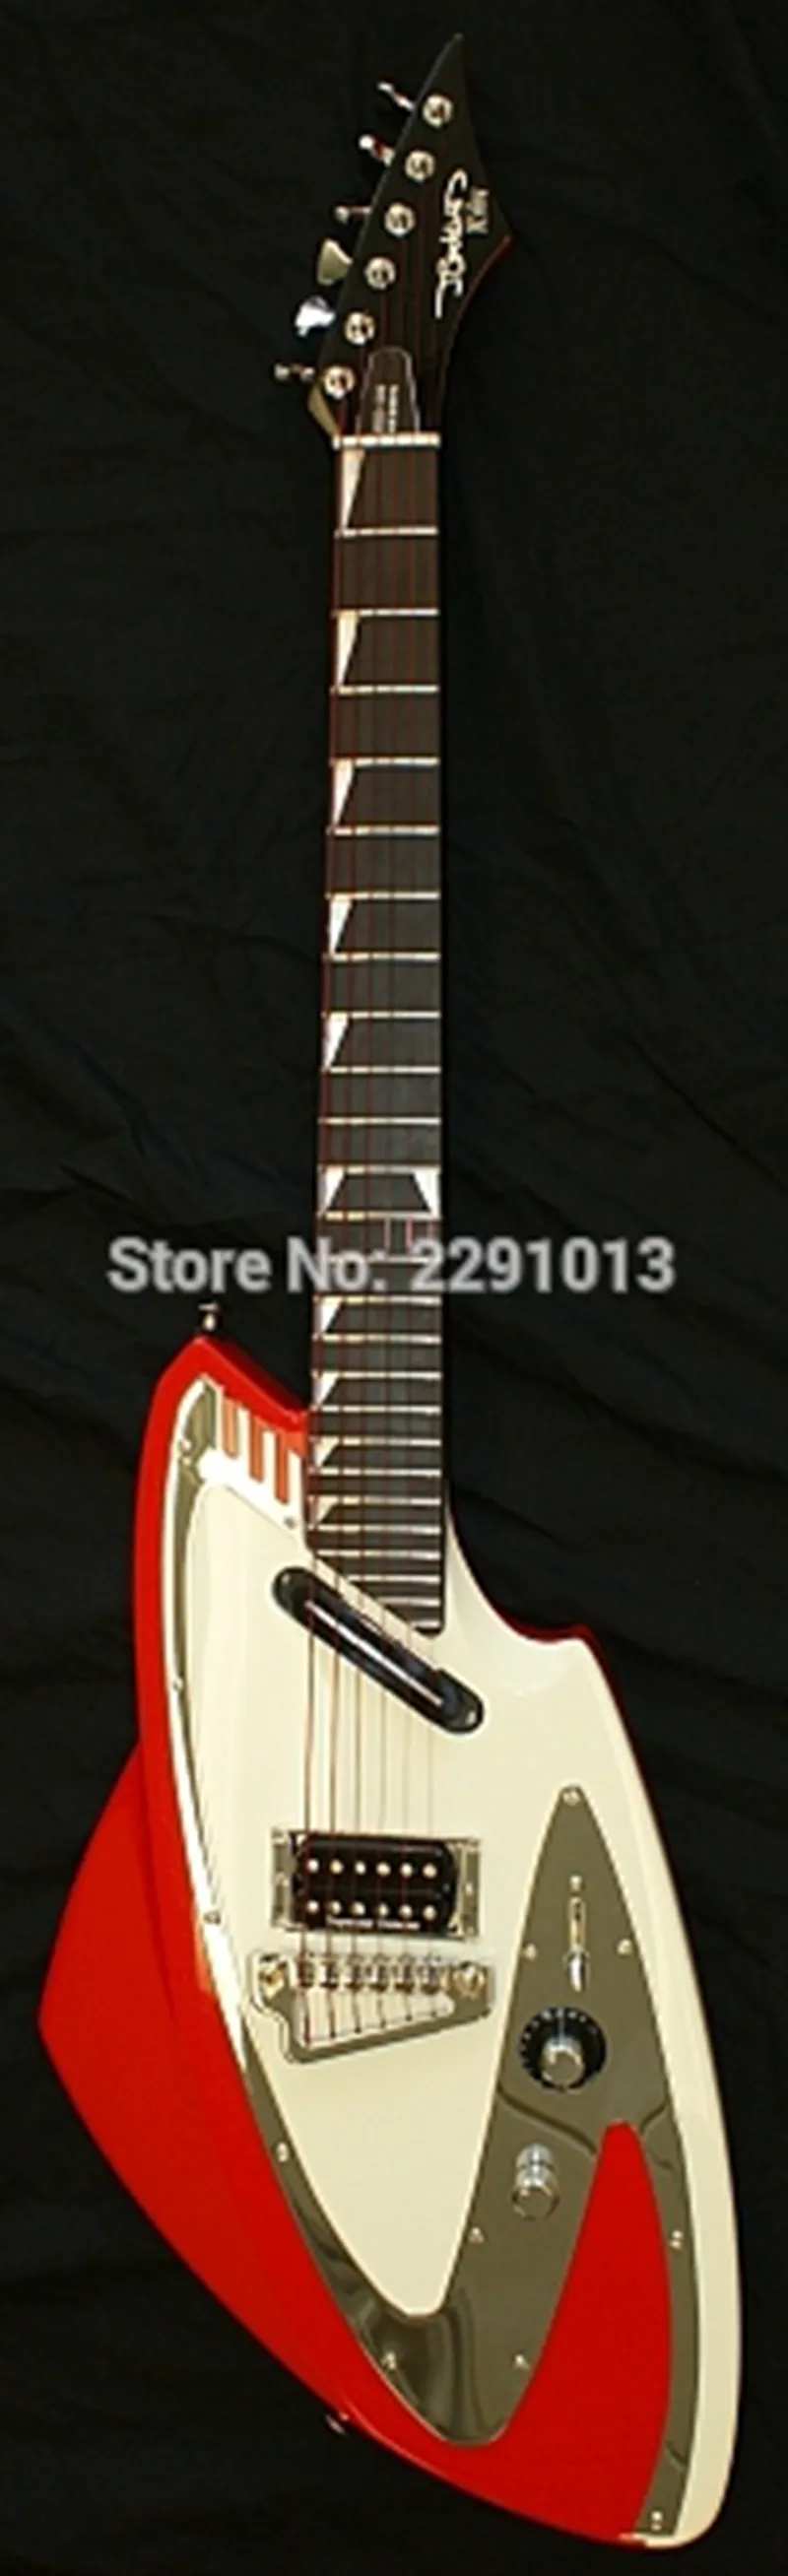 Продвижение J Backlund Design JBD 100 Arcark Metallic Red Electric Guitar Mirror Pickguard, фиксирующие тюнеры, обертка